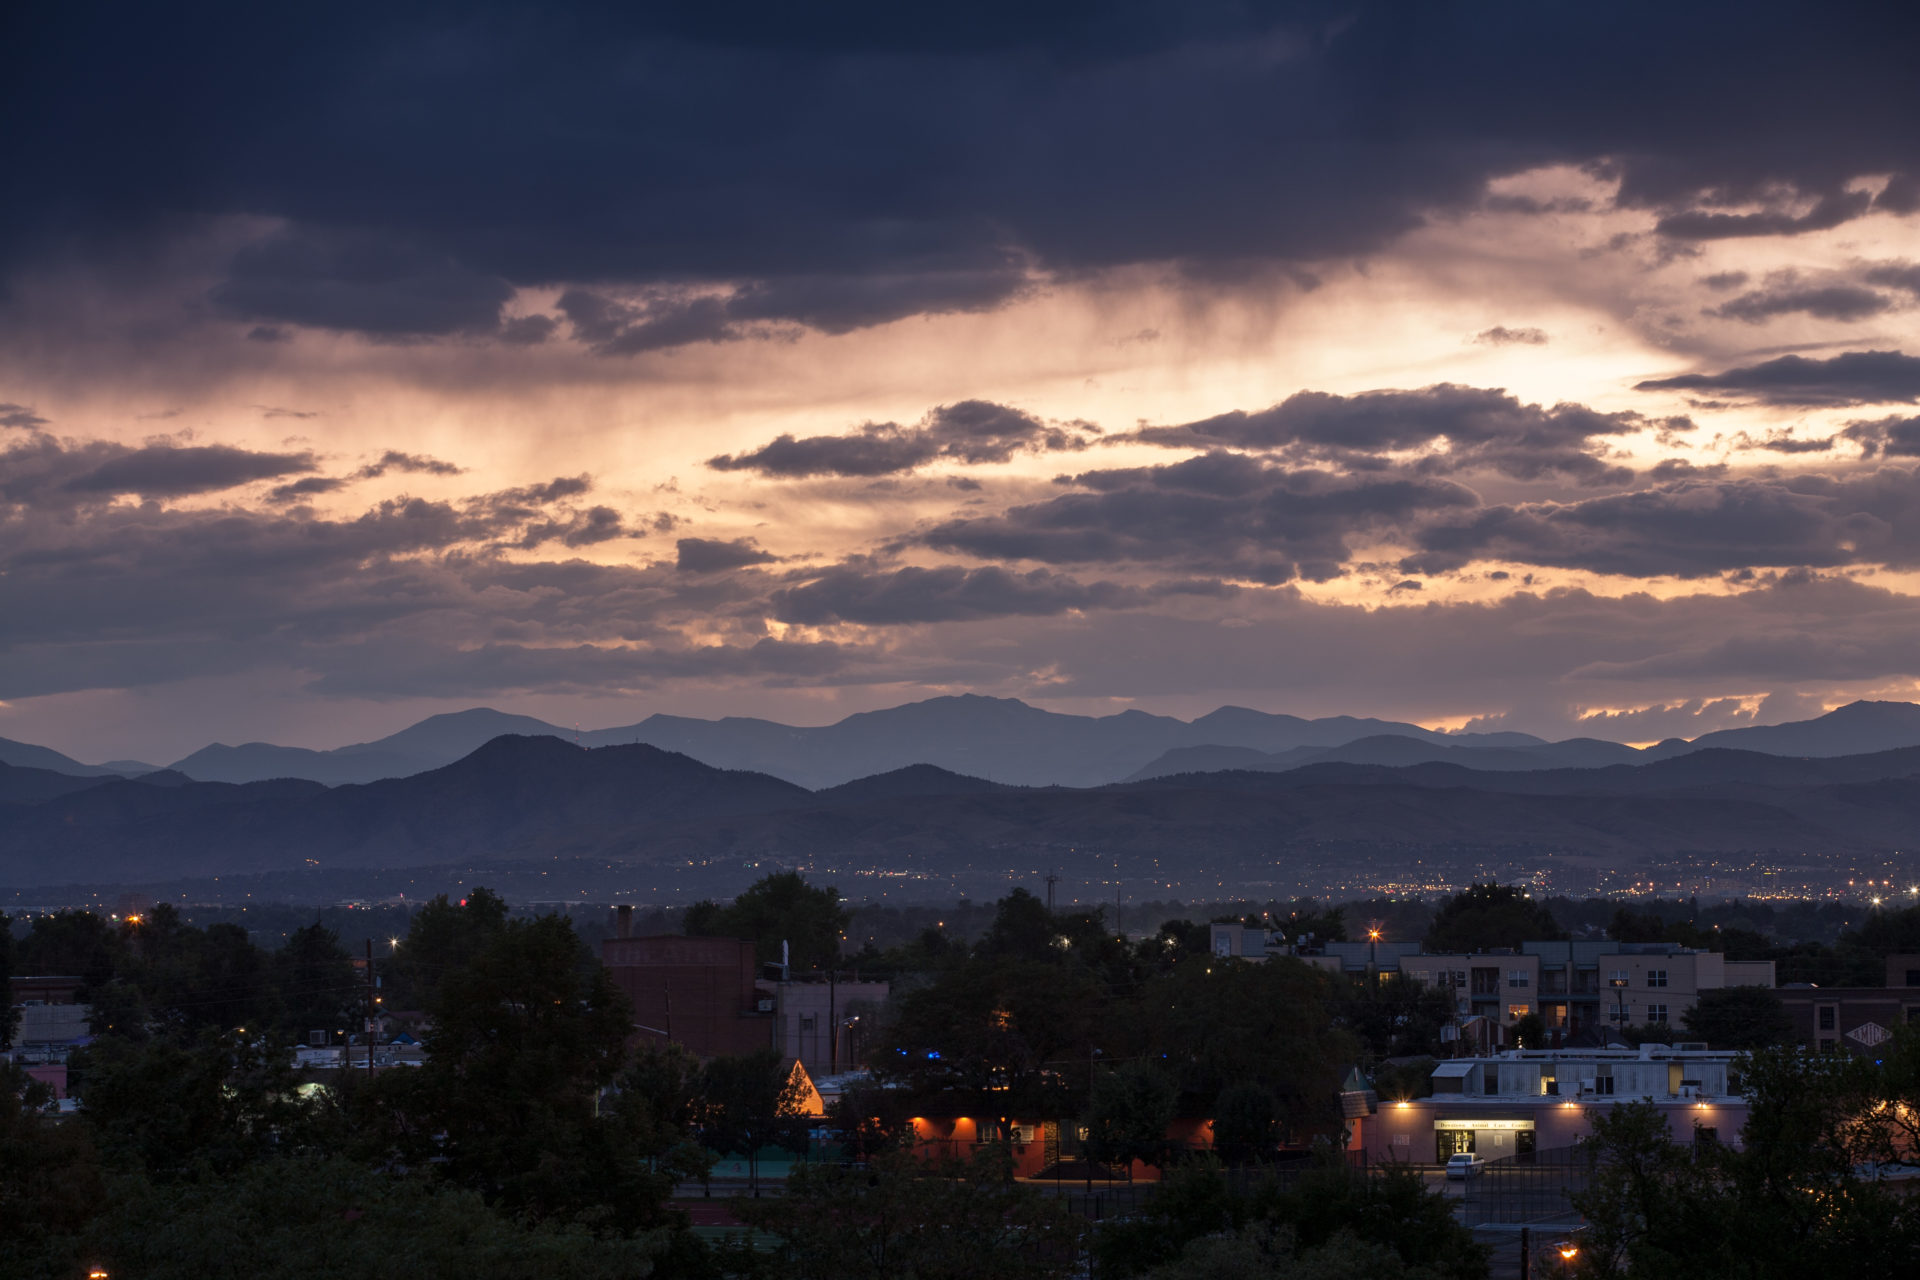 Mount Evans sunset - September 1, 2011